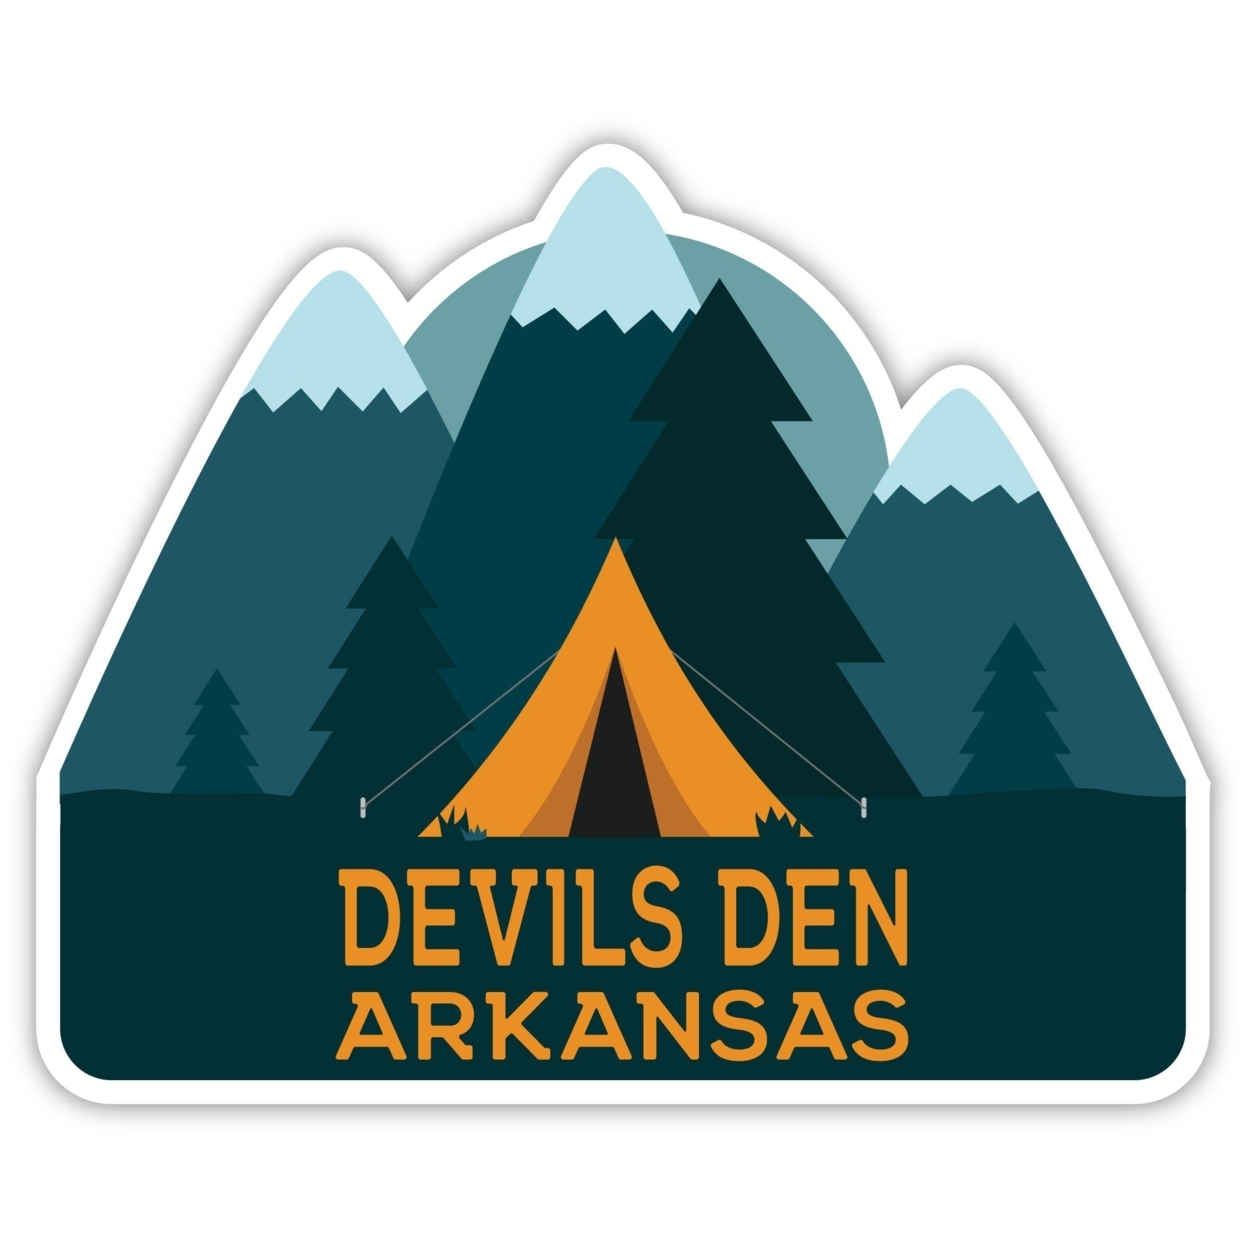 Devils Den Arkansas Souvenir Decorative Stickers (Choose Theme And Size) - Single Unit, 12-Inch, Tent